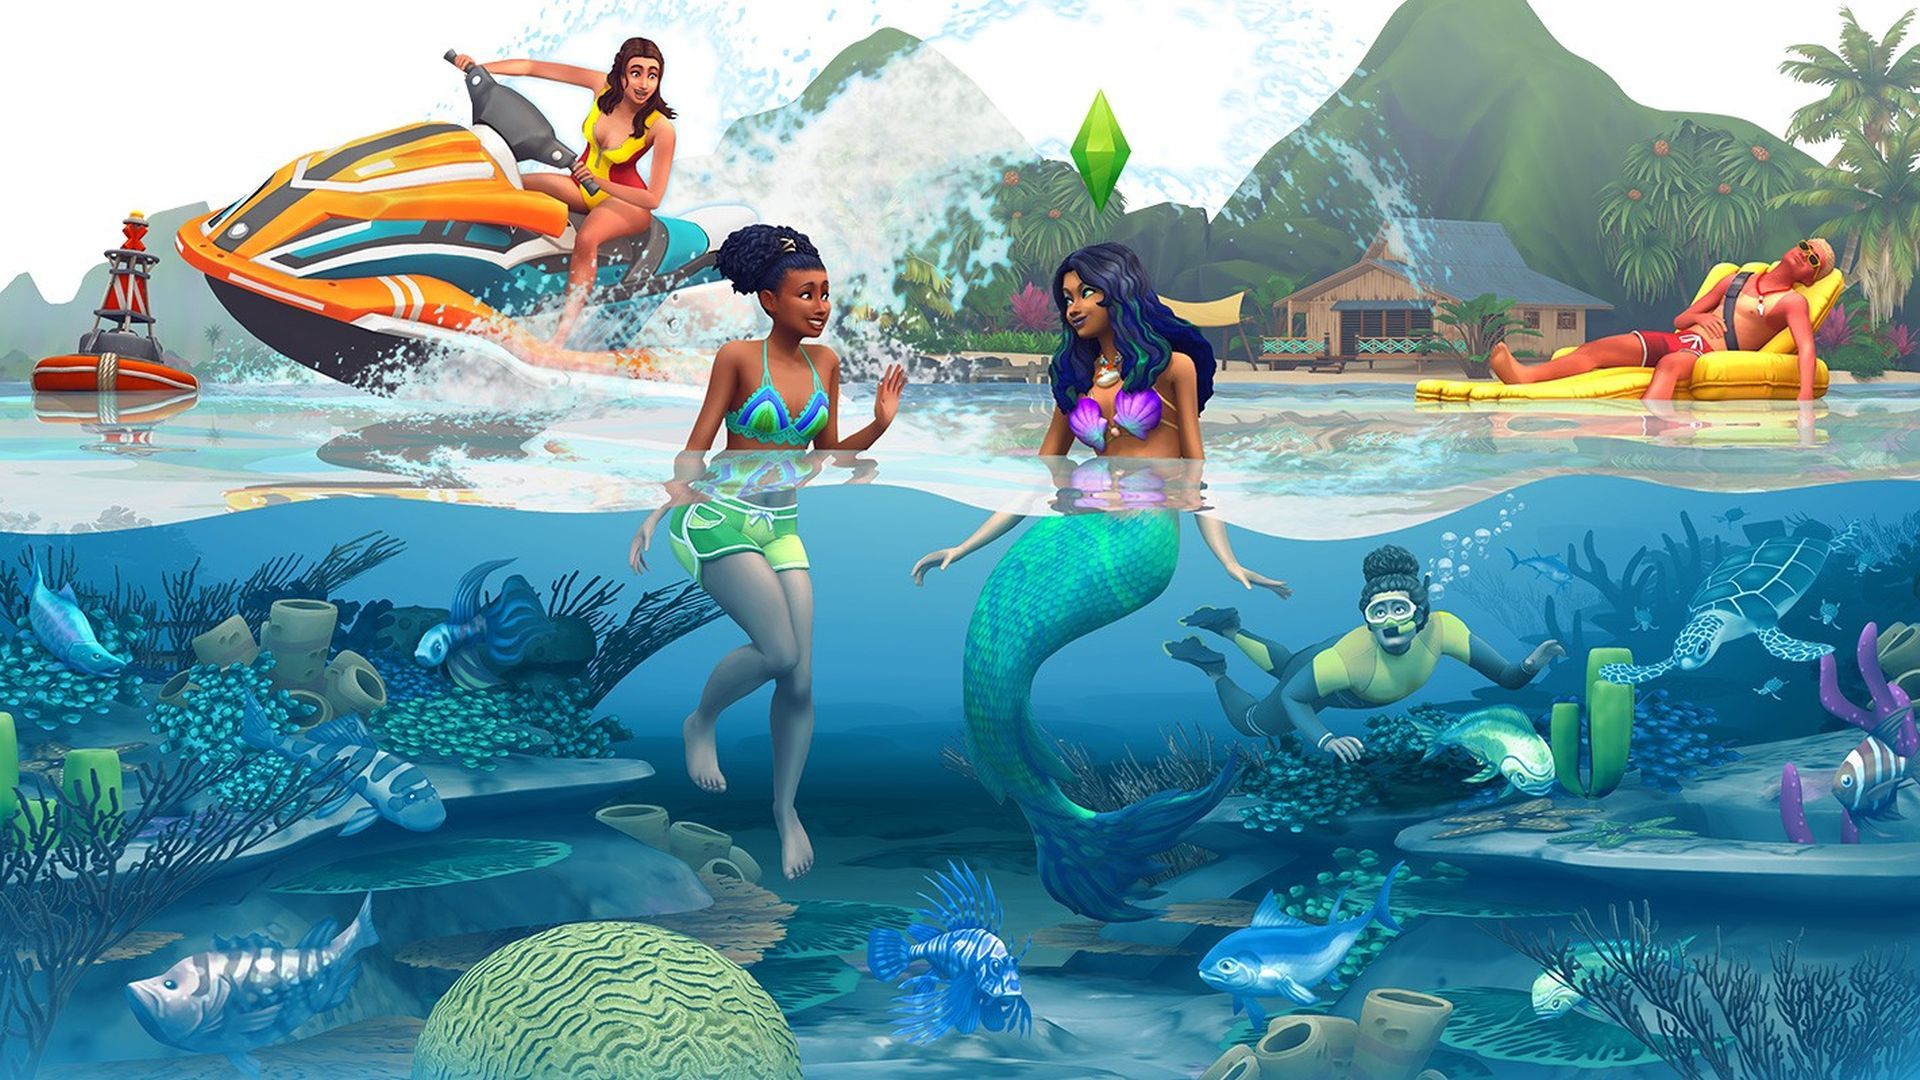 The Sims 4 The Daring Lifestyle Bundle miễn phí, mời bạn vẽ lên cuộc đời đầy xa hoa và tráng lệ trong game